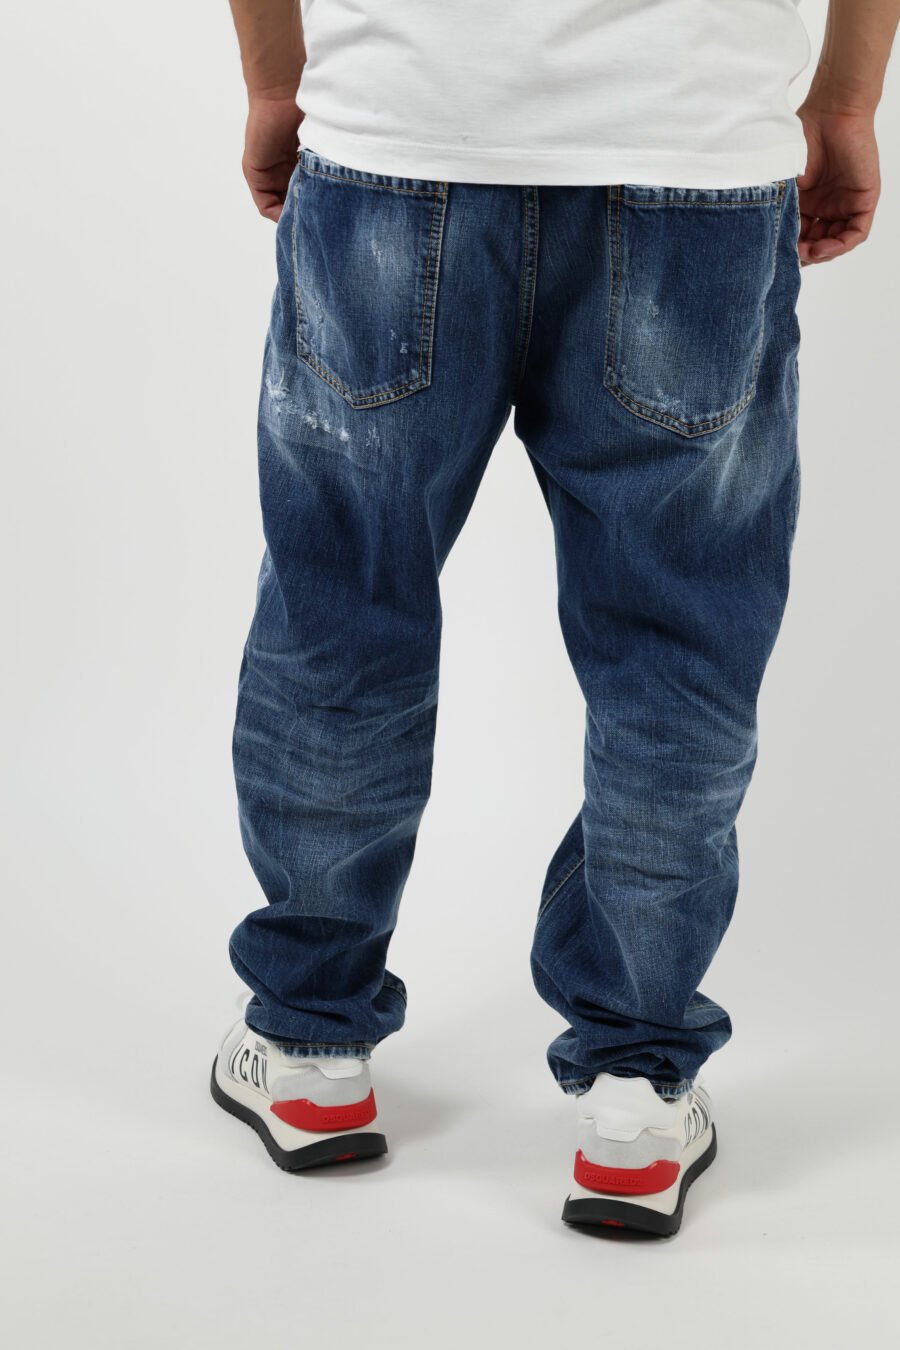 Pantalón vaquero azul "bro jeans" con logo "d2" - 8054148338572 3